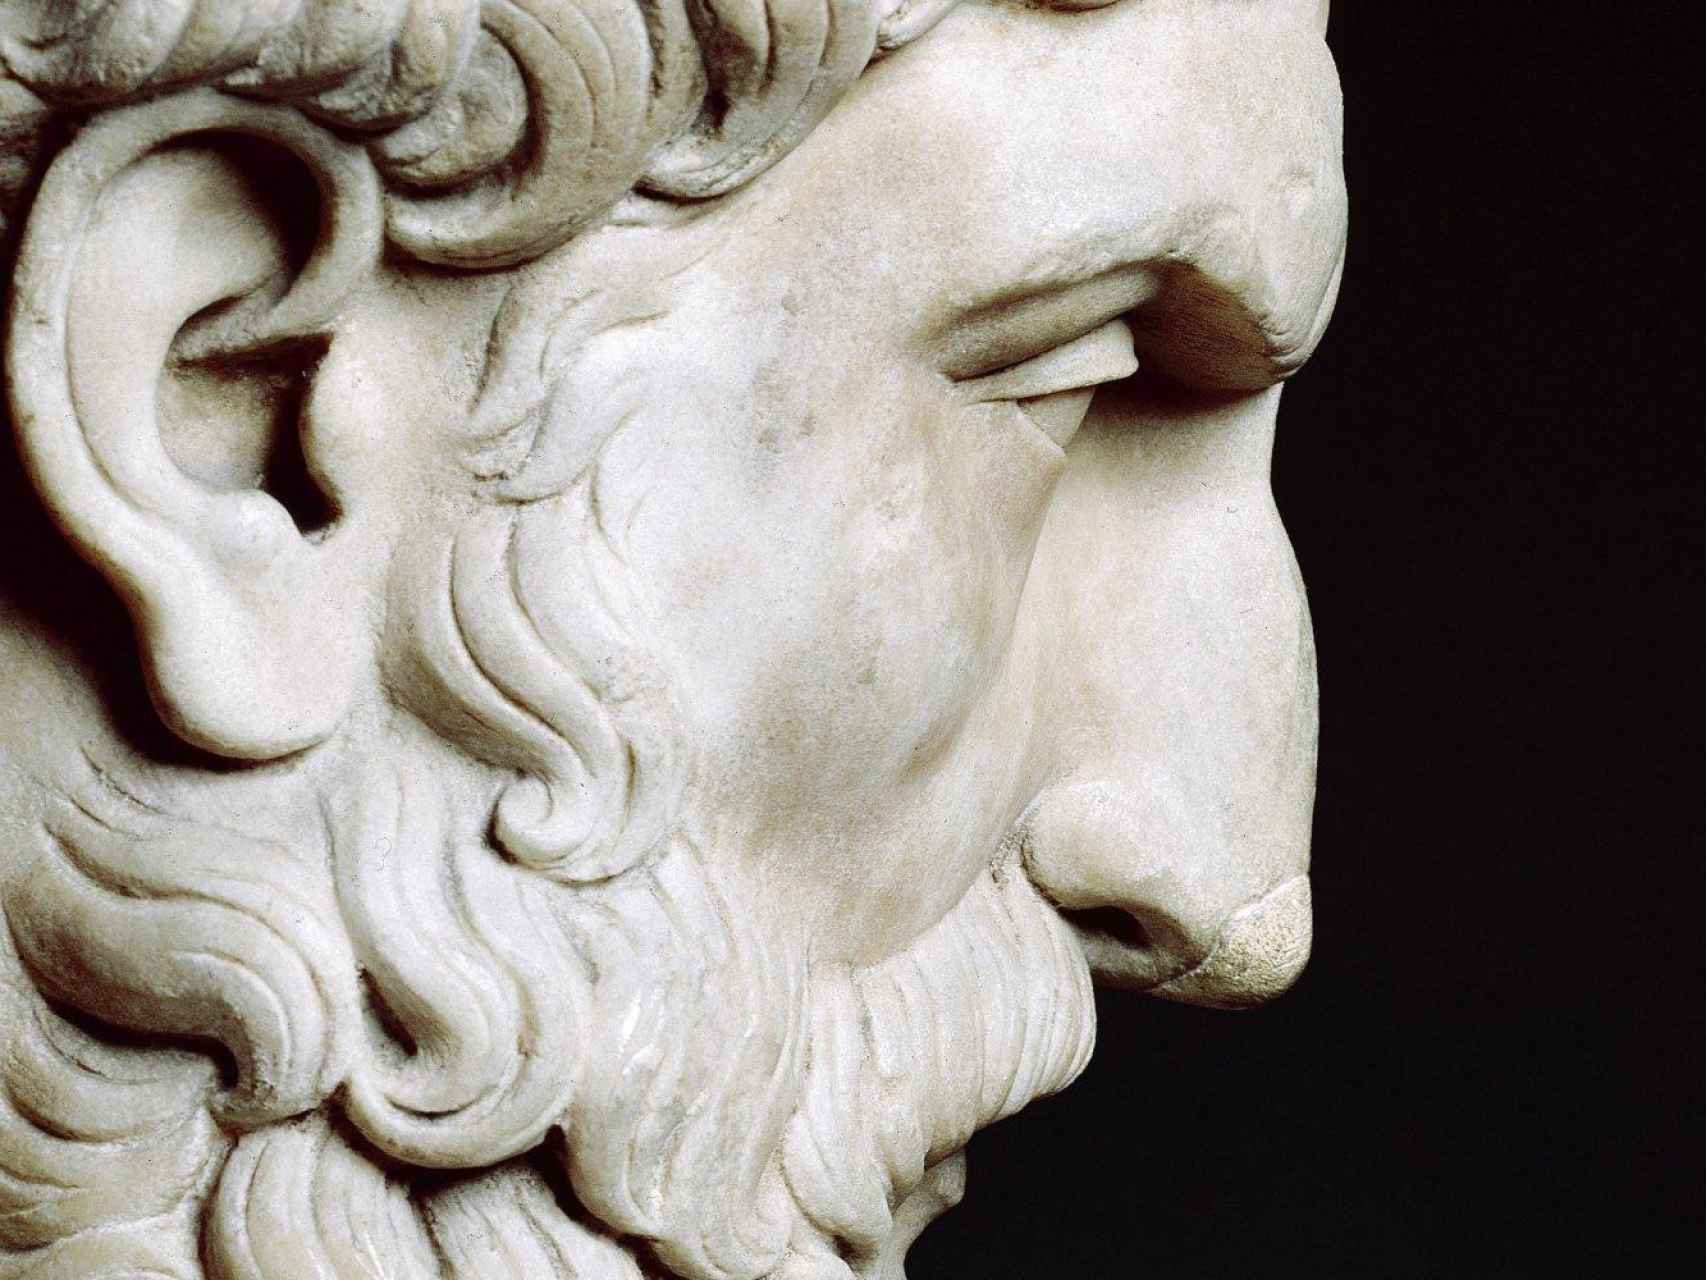 Copia romana del busto griego de Epicuro del siglo II d.C.